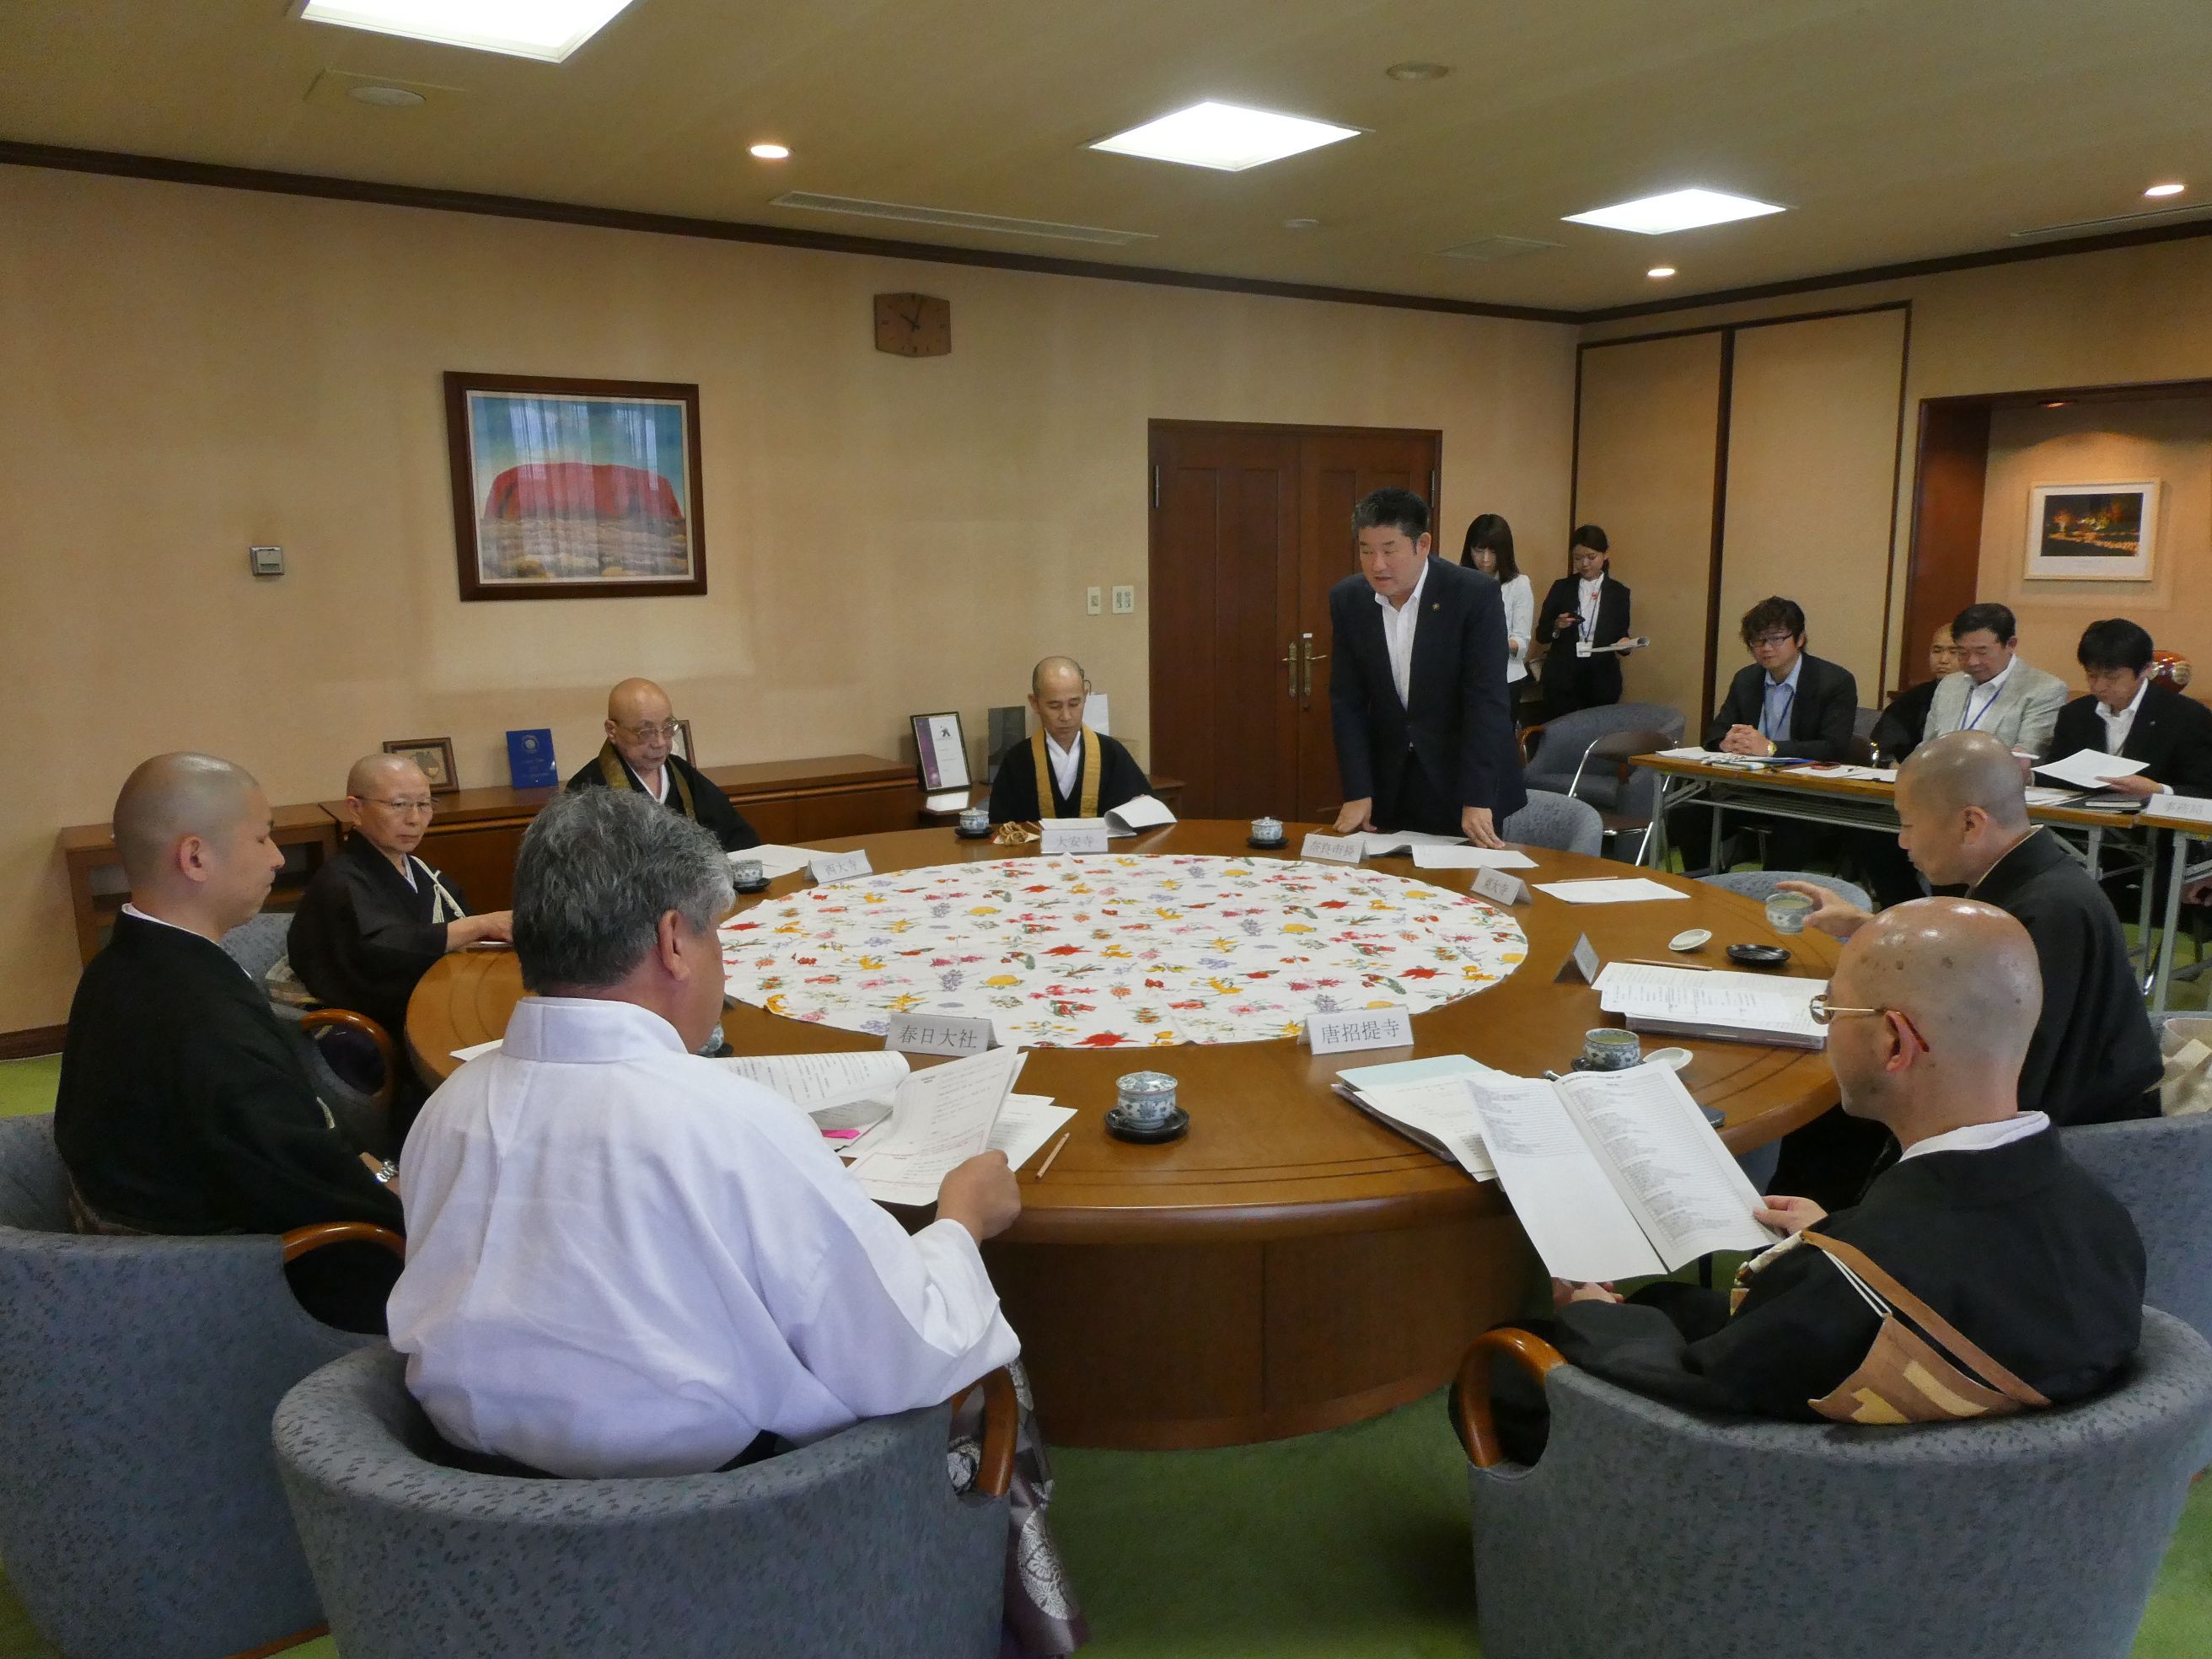 令和元年度第1回珠光茶会実行委員会の画像